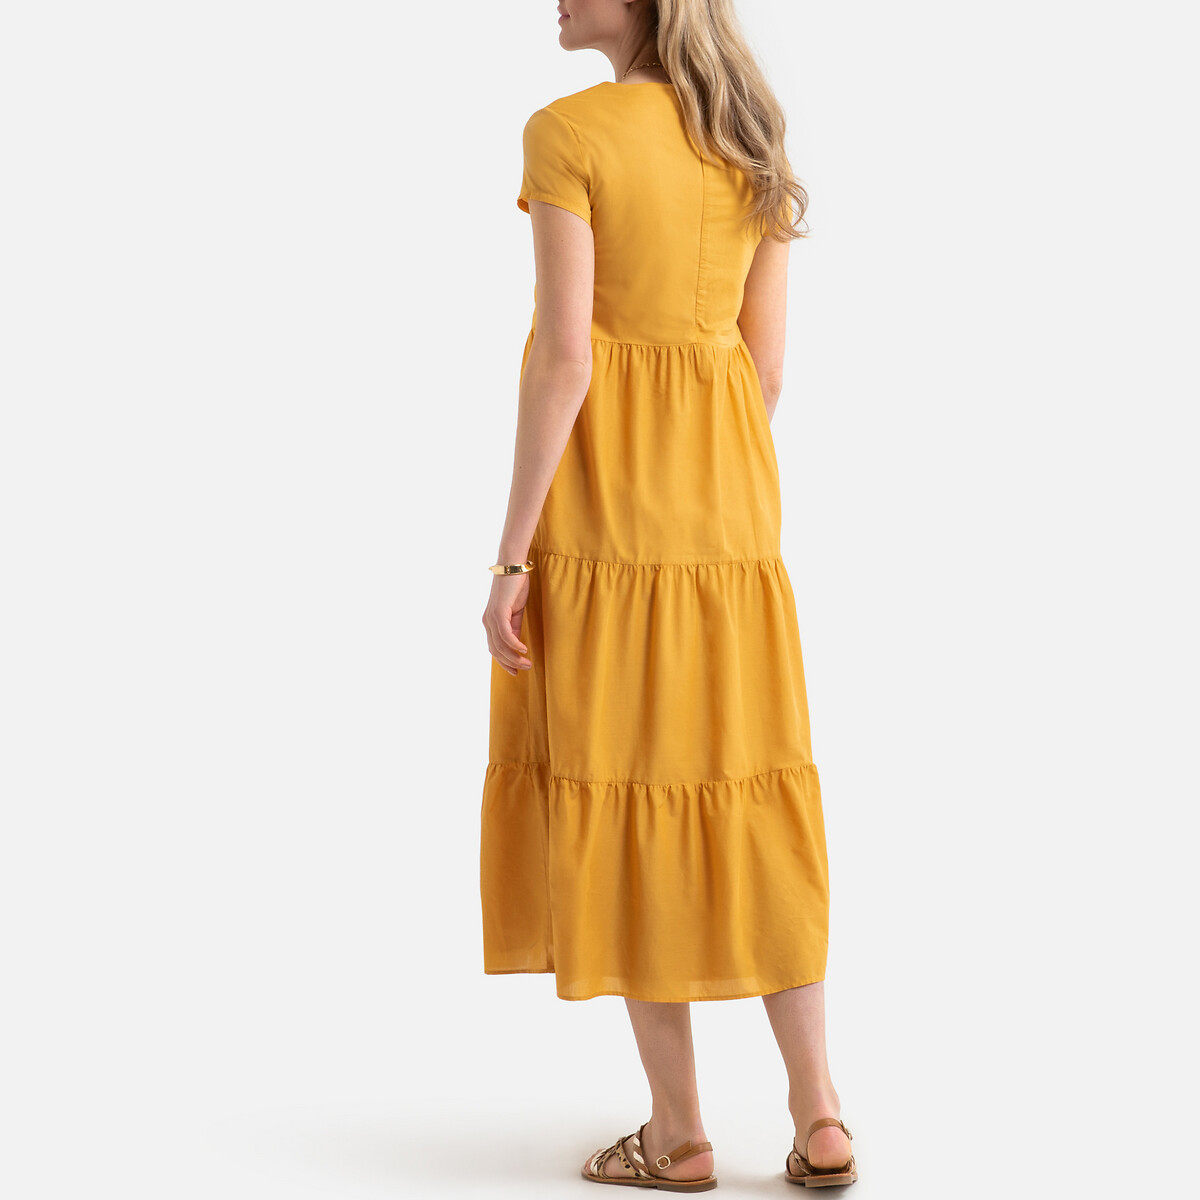 Платье LaRedoute Длинное расклешенное с короткими рукавами 38 (FR) - 44 (RUS) желтый, размер 38 (FR) - 44 (RUS) Длинное расклешенное с короткими рукавами 38 (FR) - 44 (RUS) желтый - фото 4